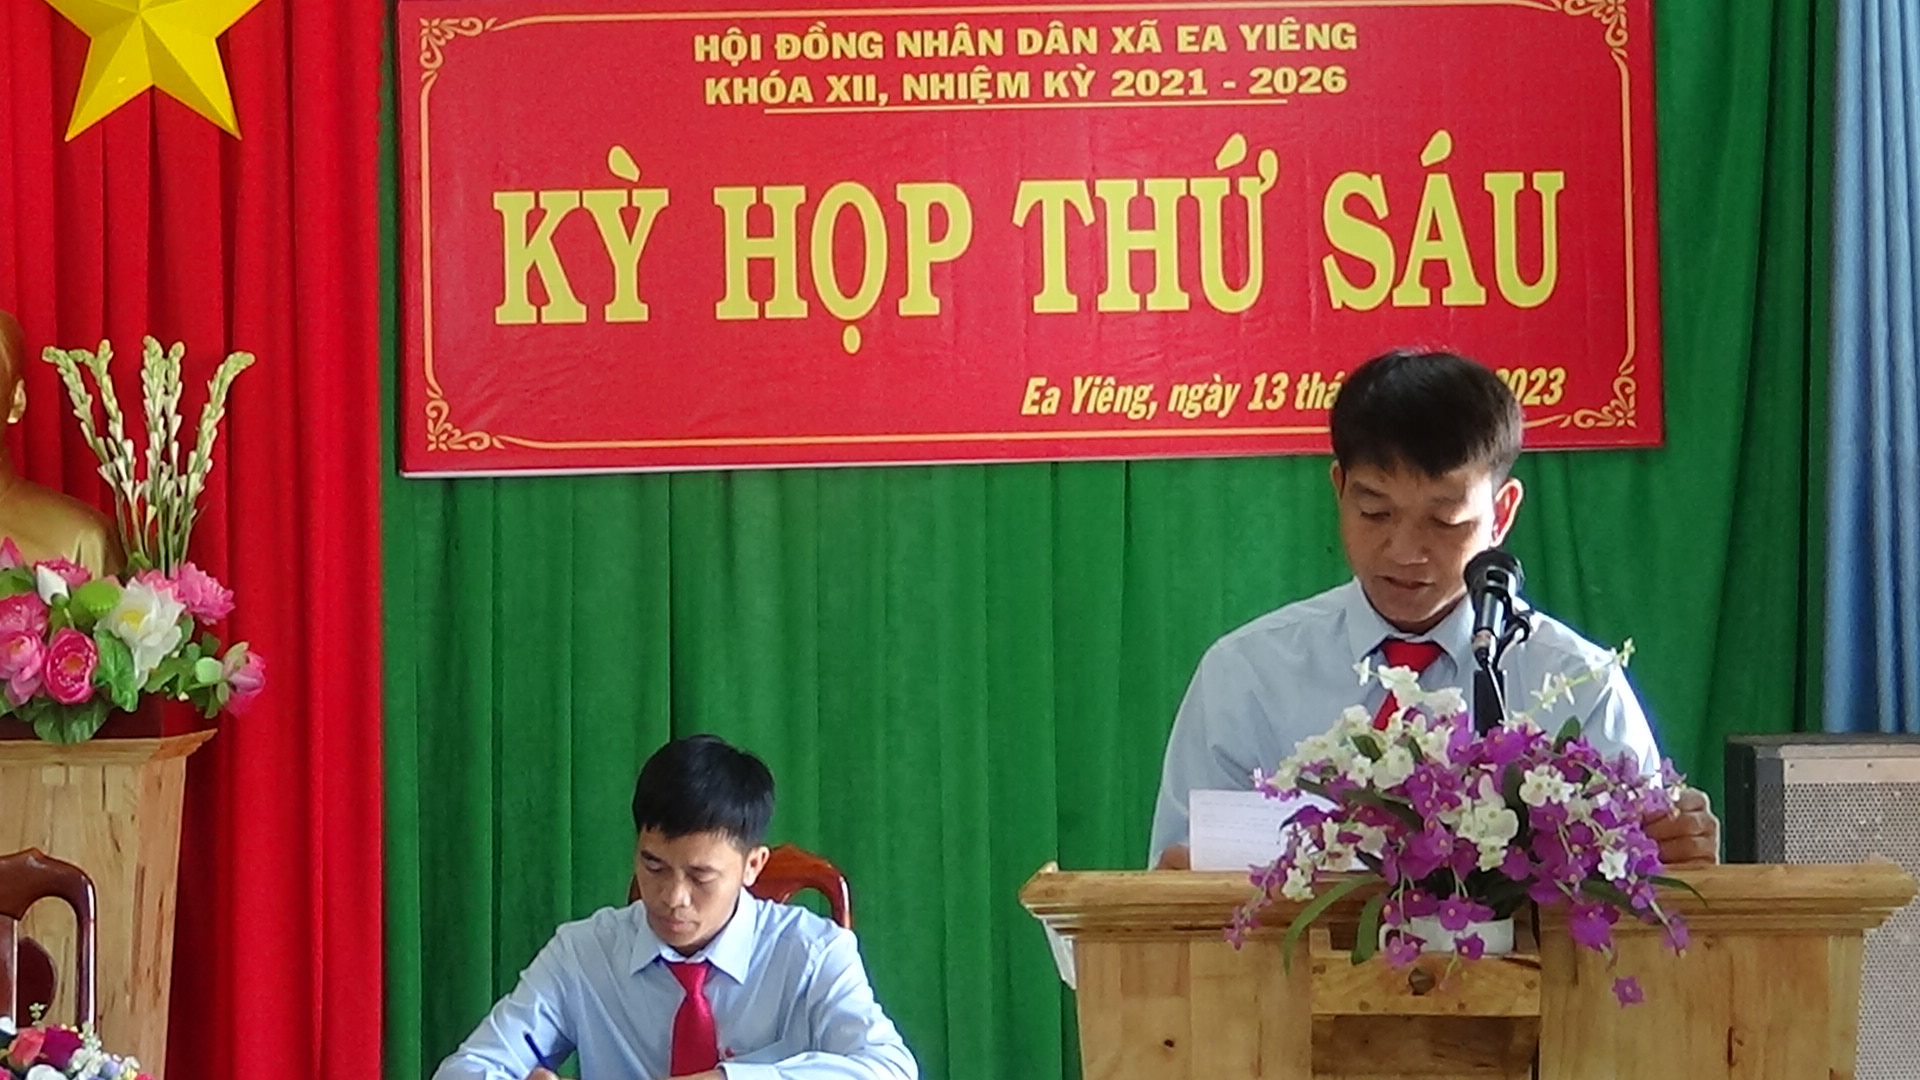 HĐND xã Ea Yiêng tổ chức kỳ họp thứ 6, khóa XII, nhiệm kỳ 2021-2026